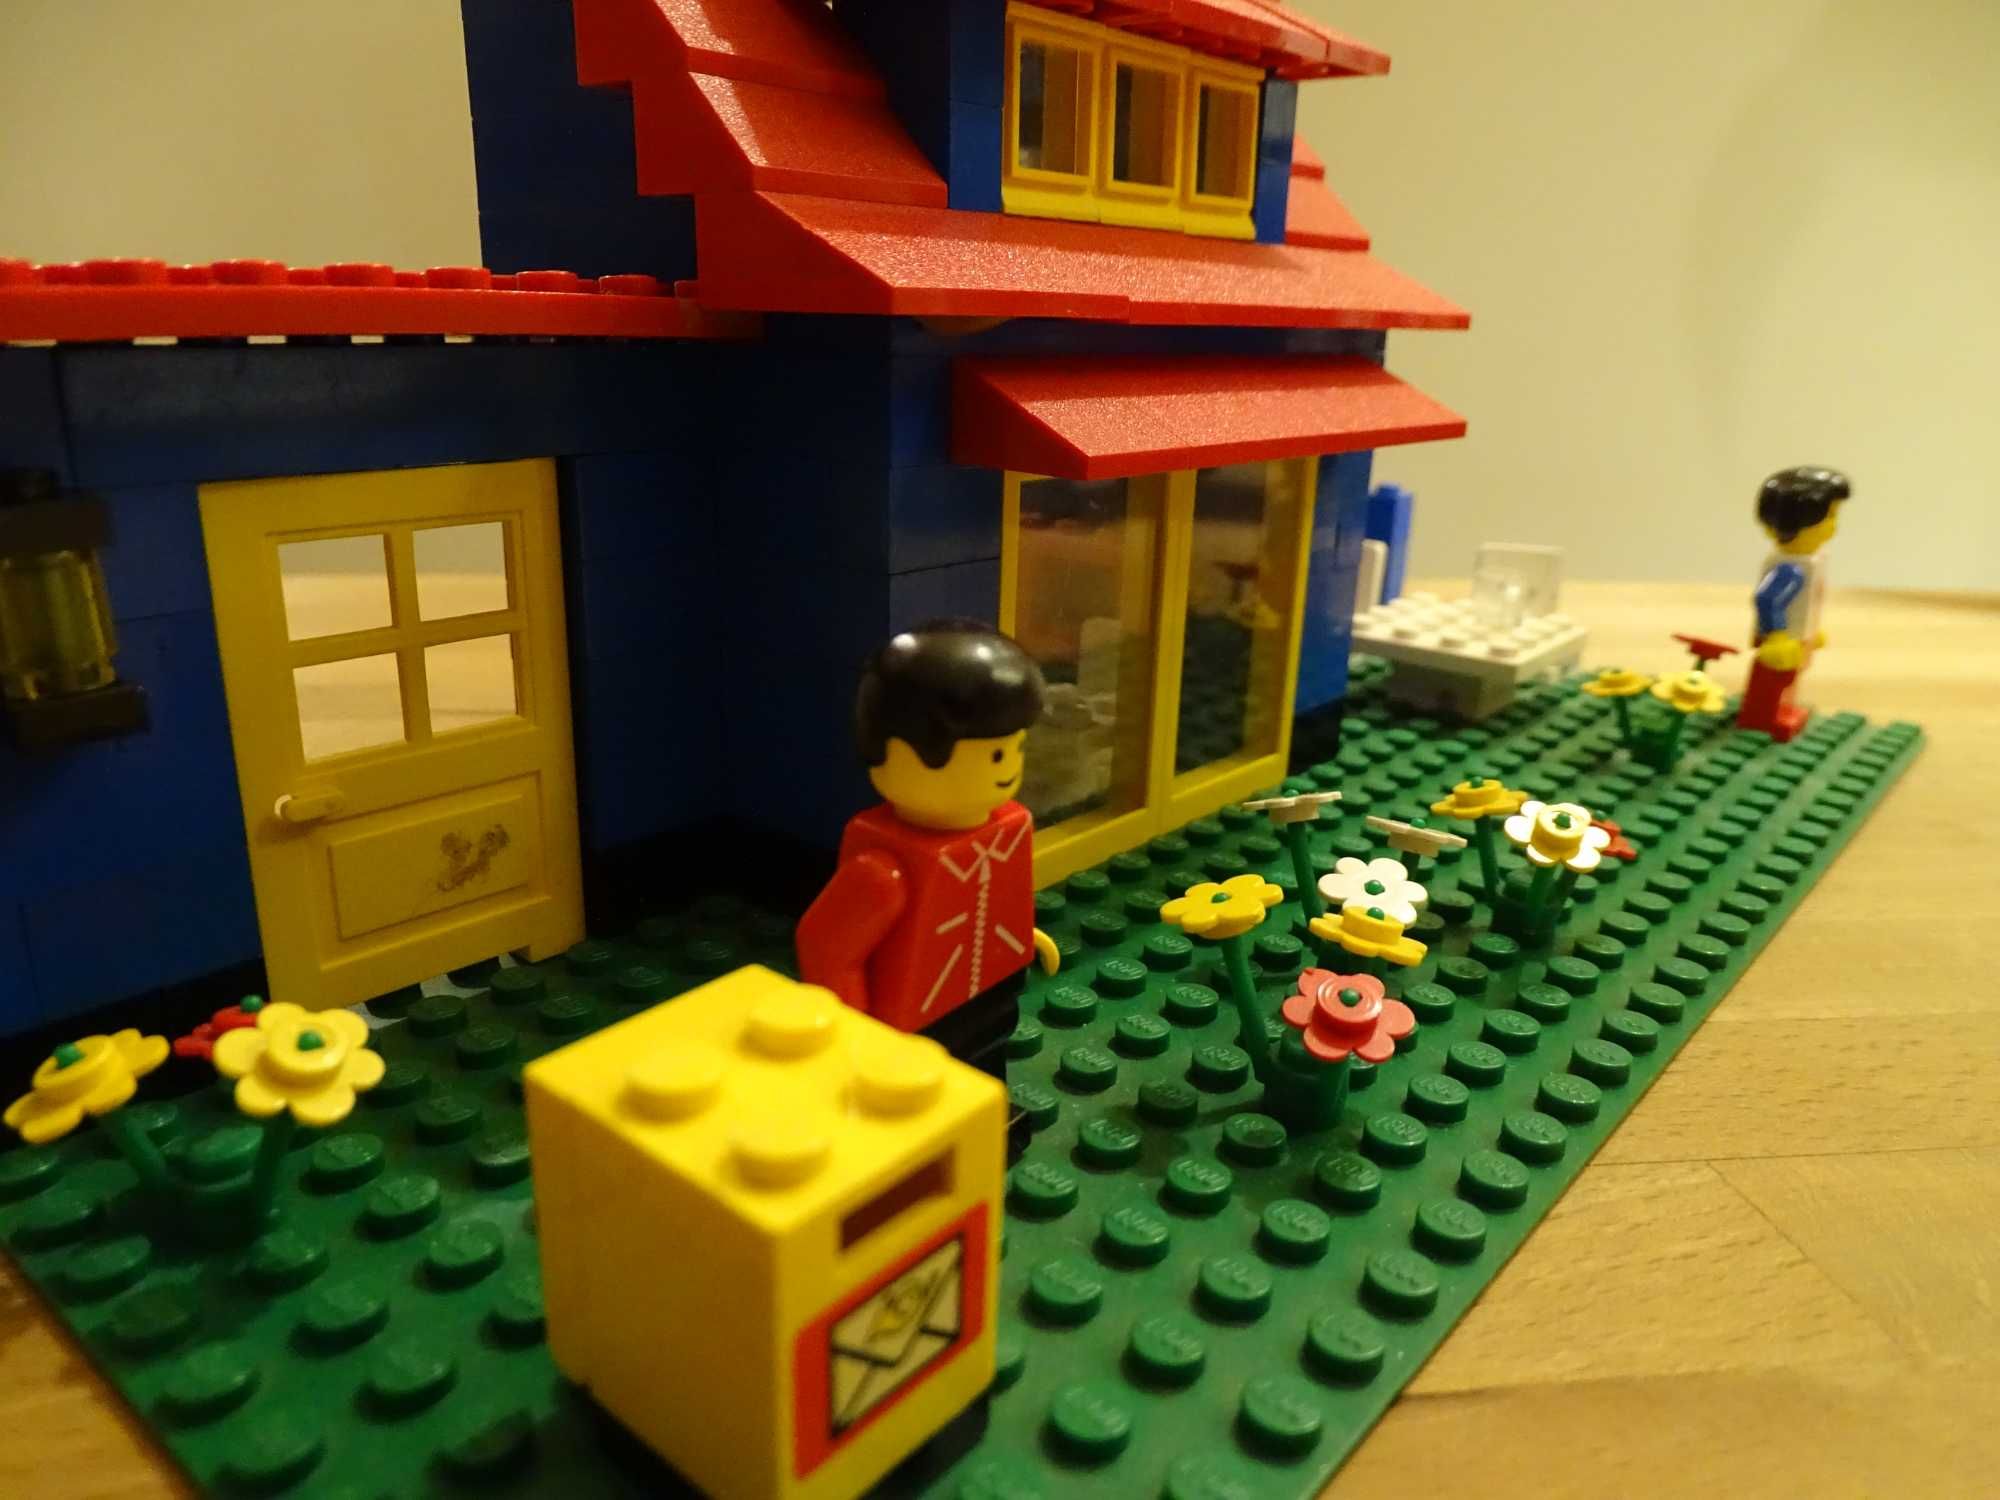 Lego 6372 - Lego Land Town House